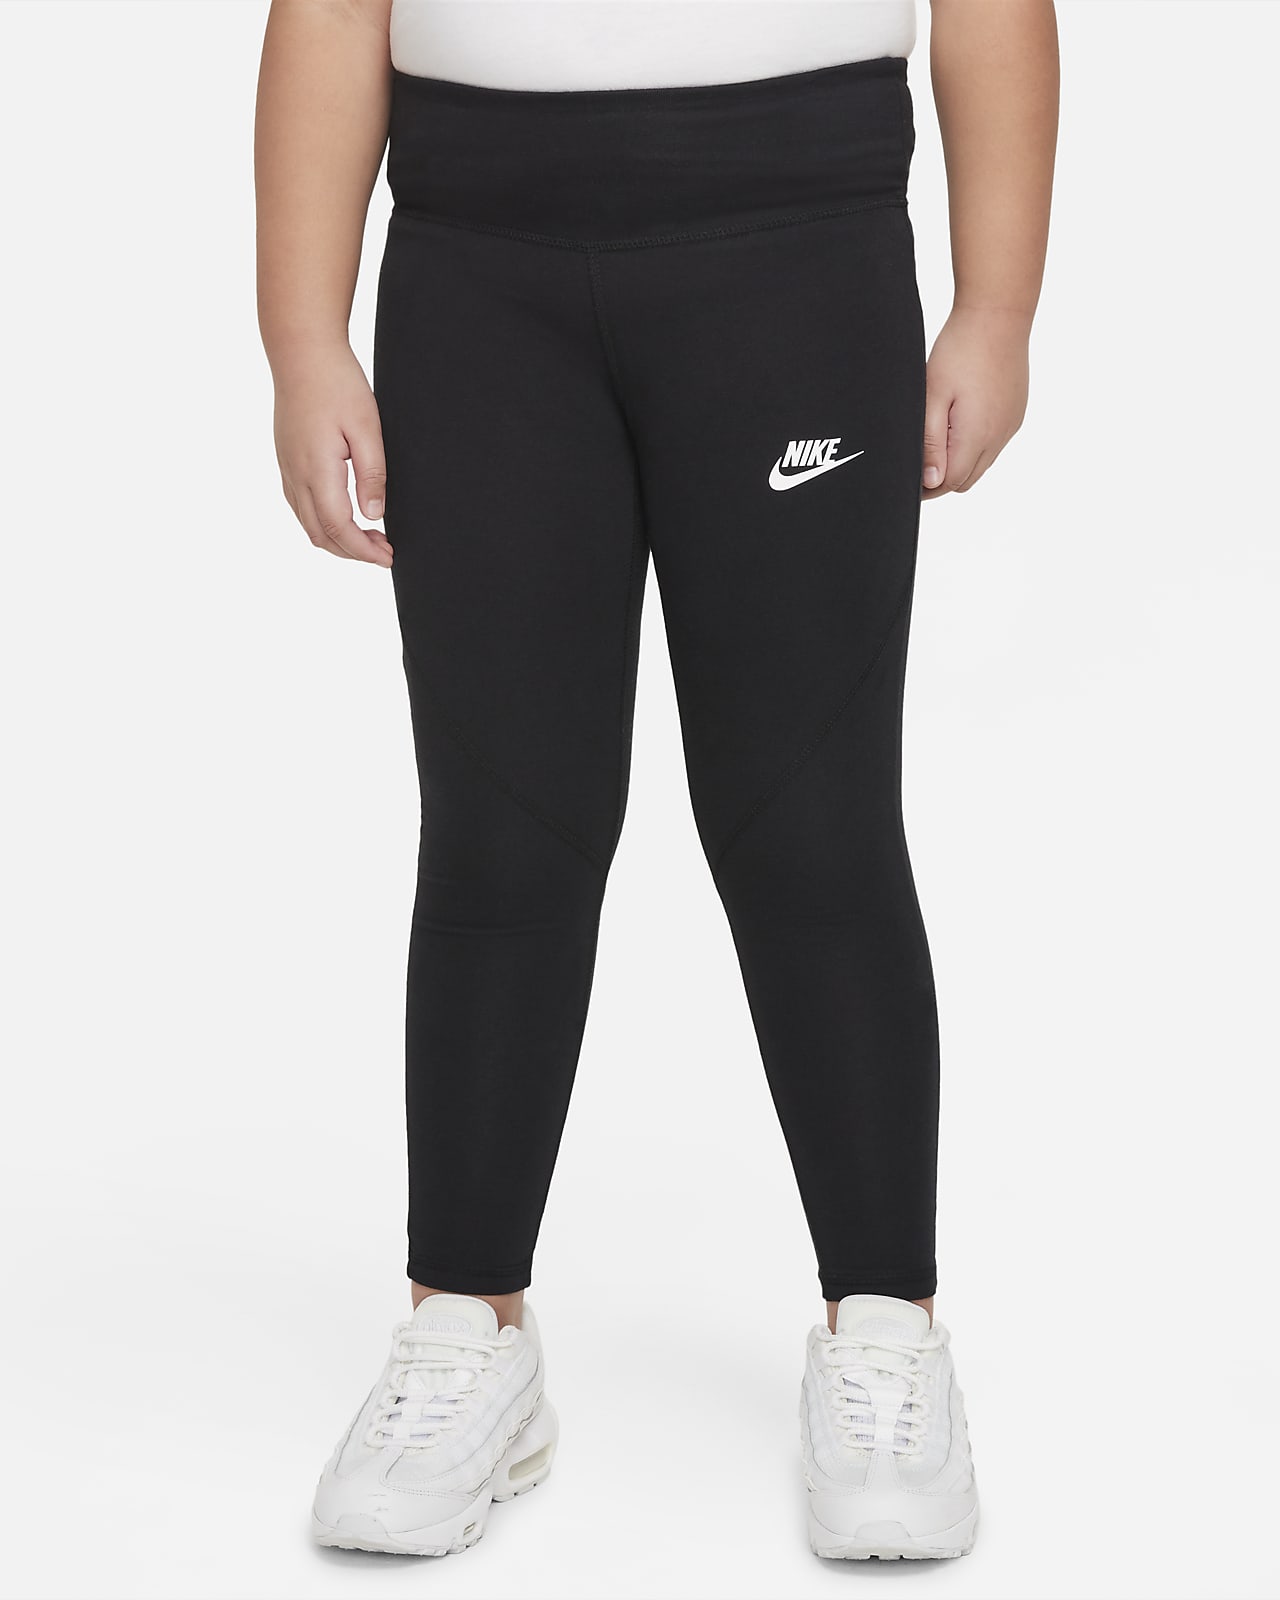 Legging taille haute Nike Sportswear Favorites pour Fille plus âgée (taille étendue)